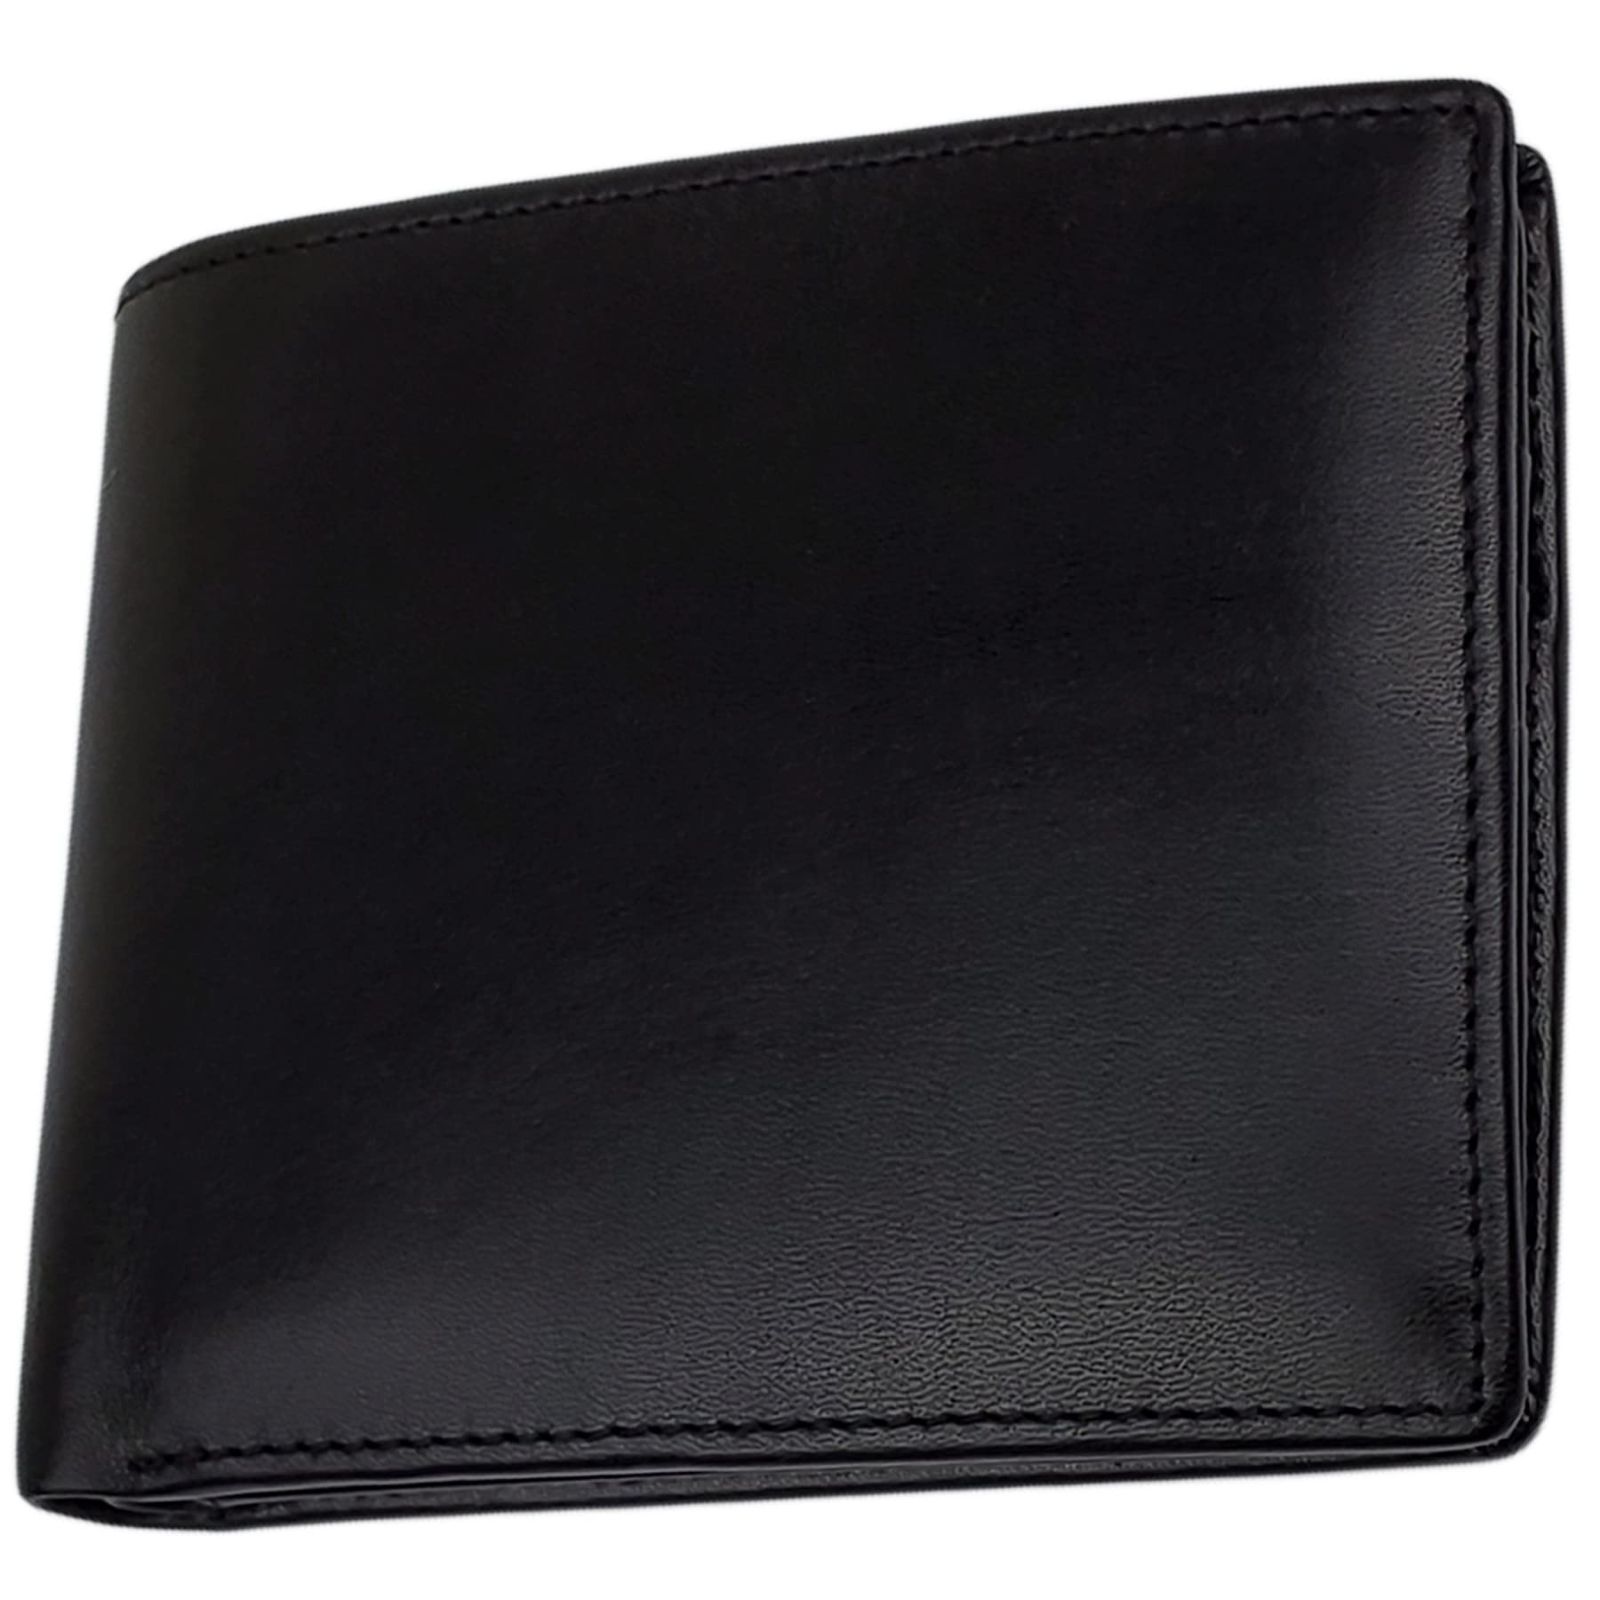 色: ブラック】ファブリツィオ 財布 メンズ 二つ折り ボックス型 小銭 ...